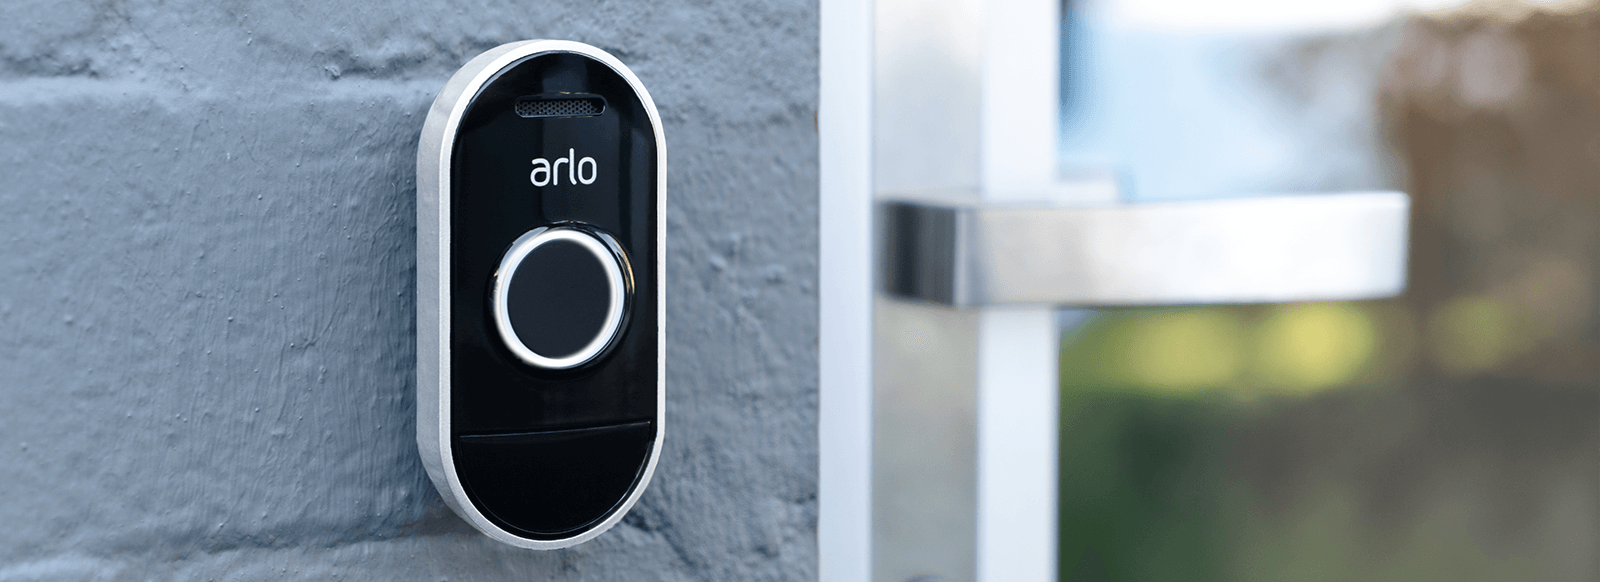 a smarter doorbell, a more intelligent desing